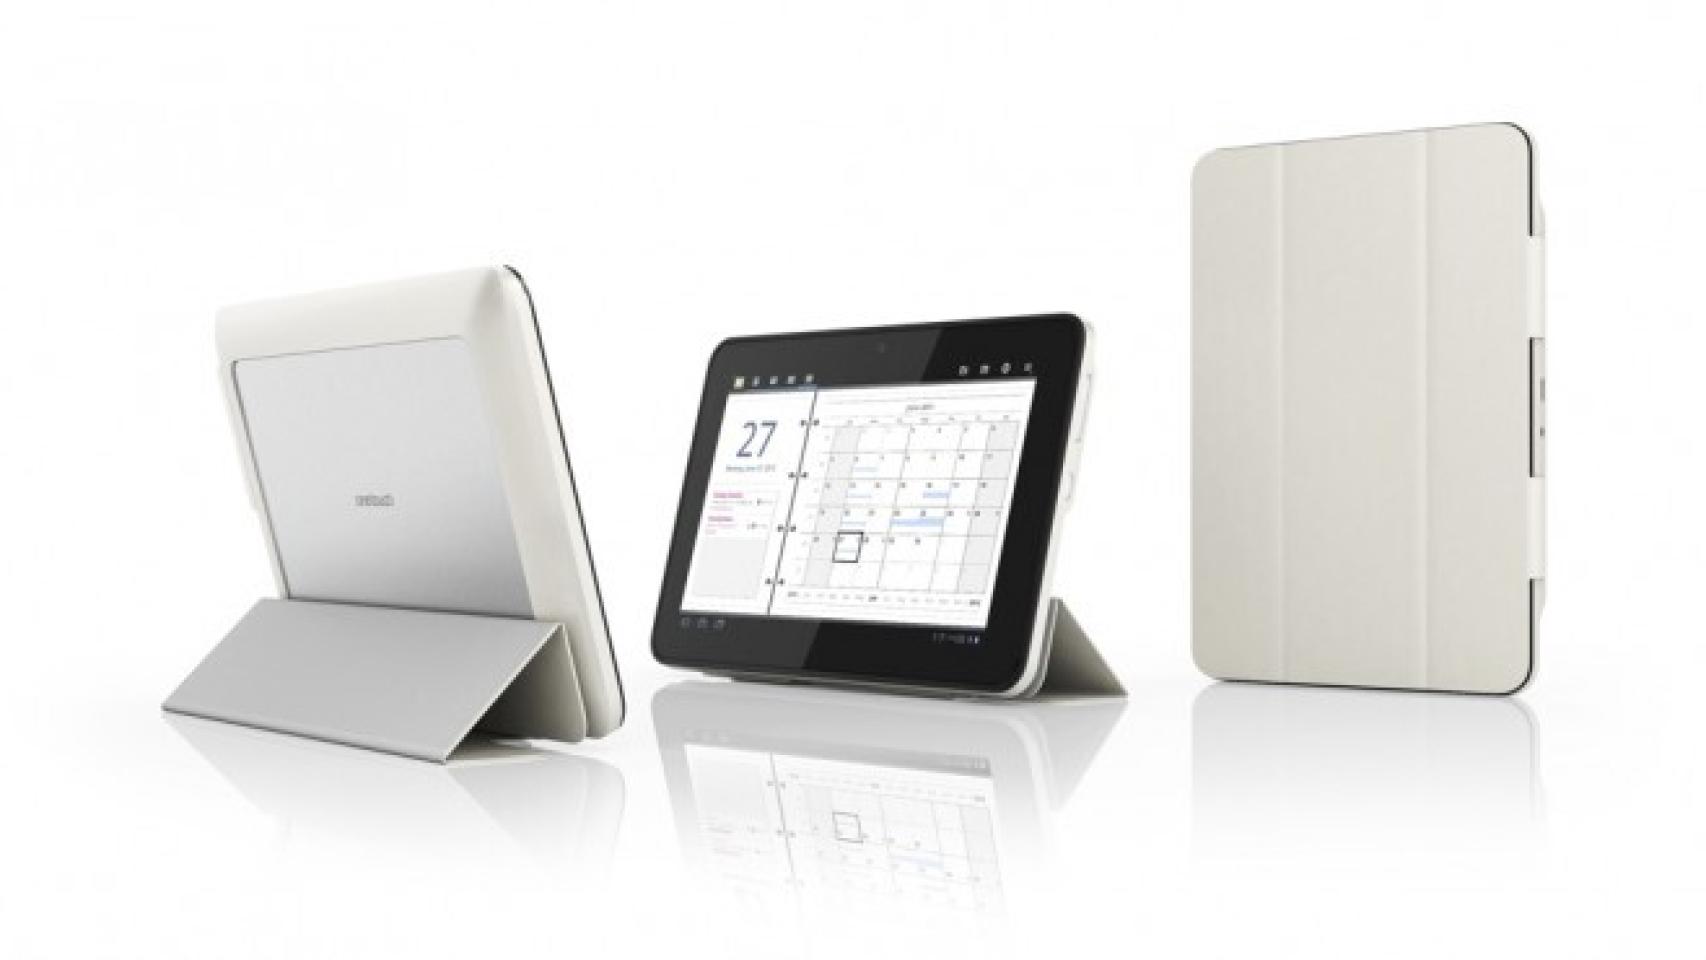 Alcatel presenta la tablet EVO7: Marcos intercambiables y su novedoso módulo 3G